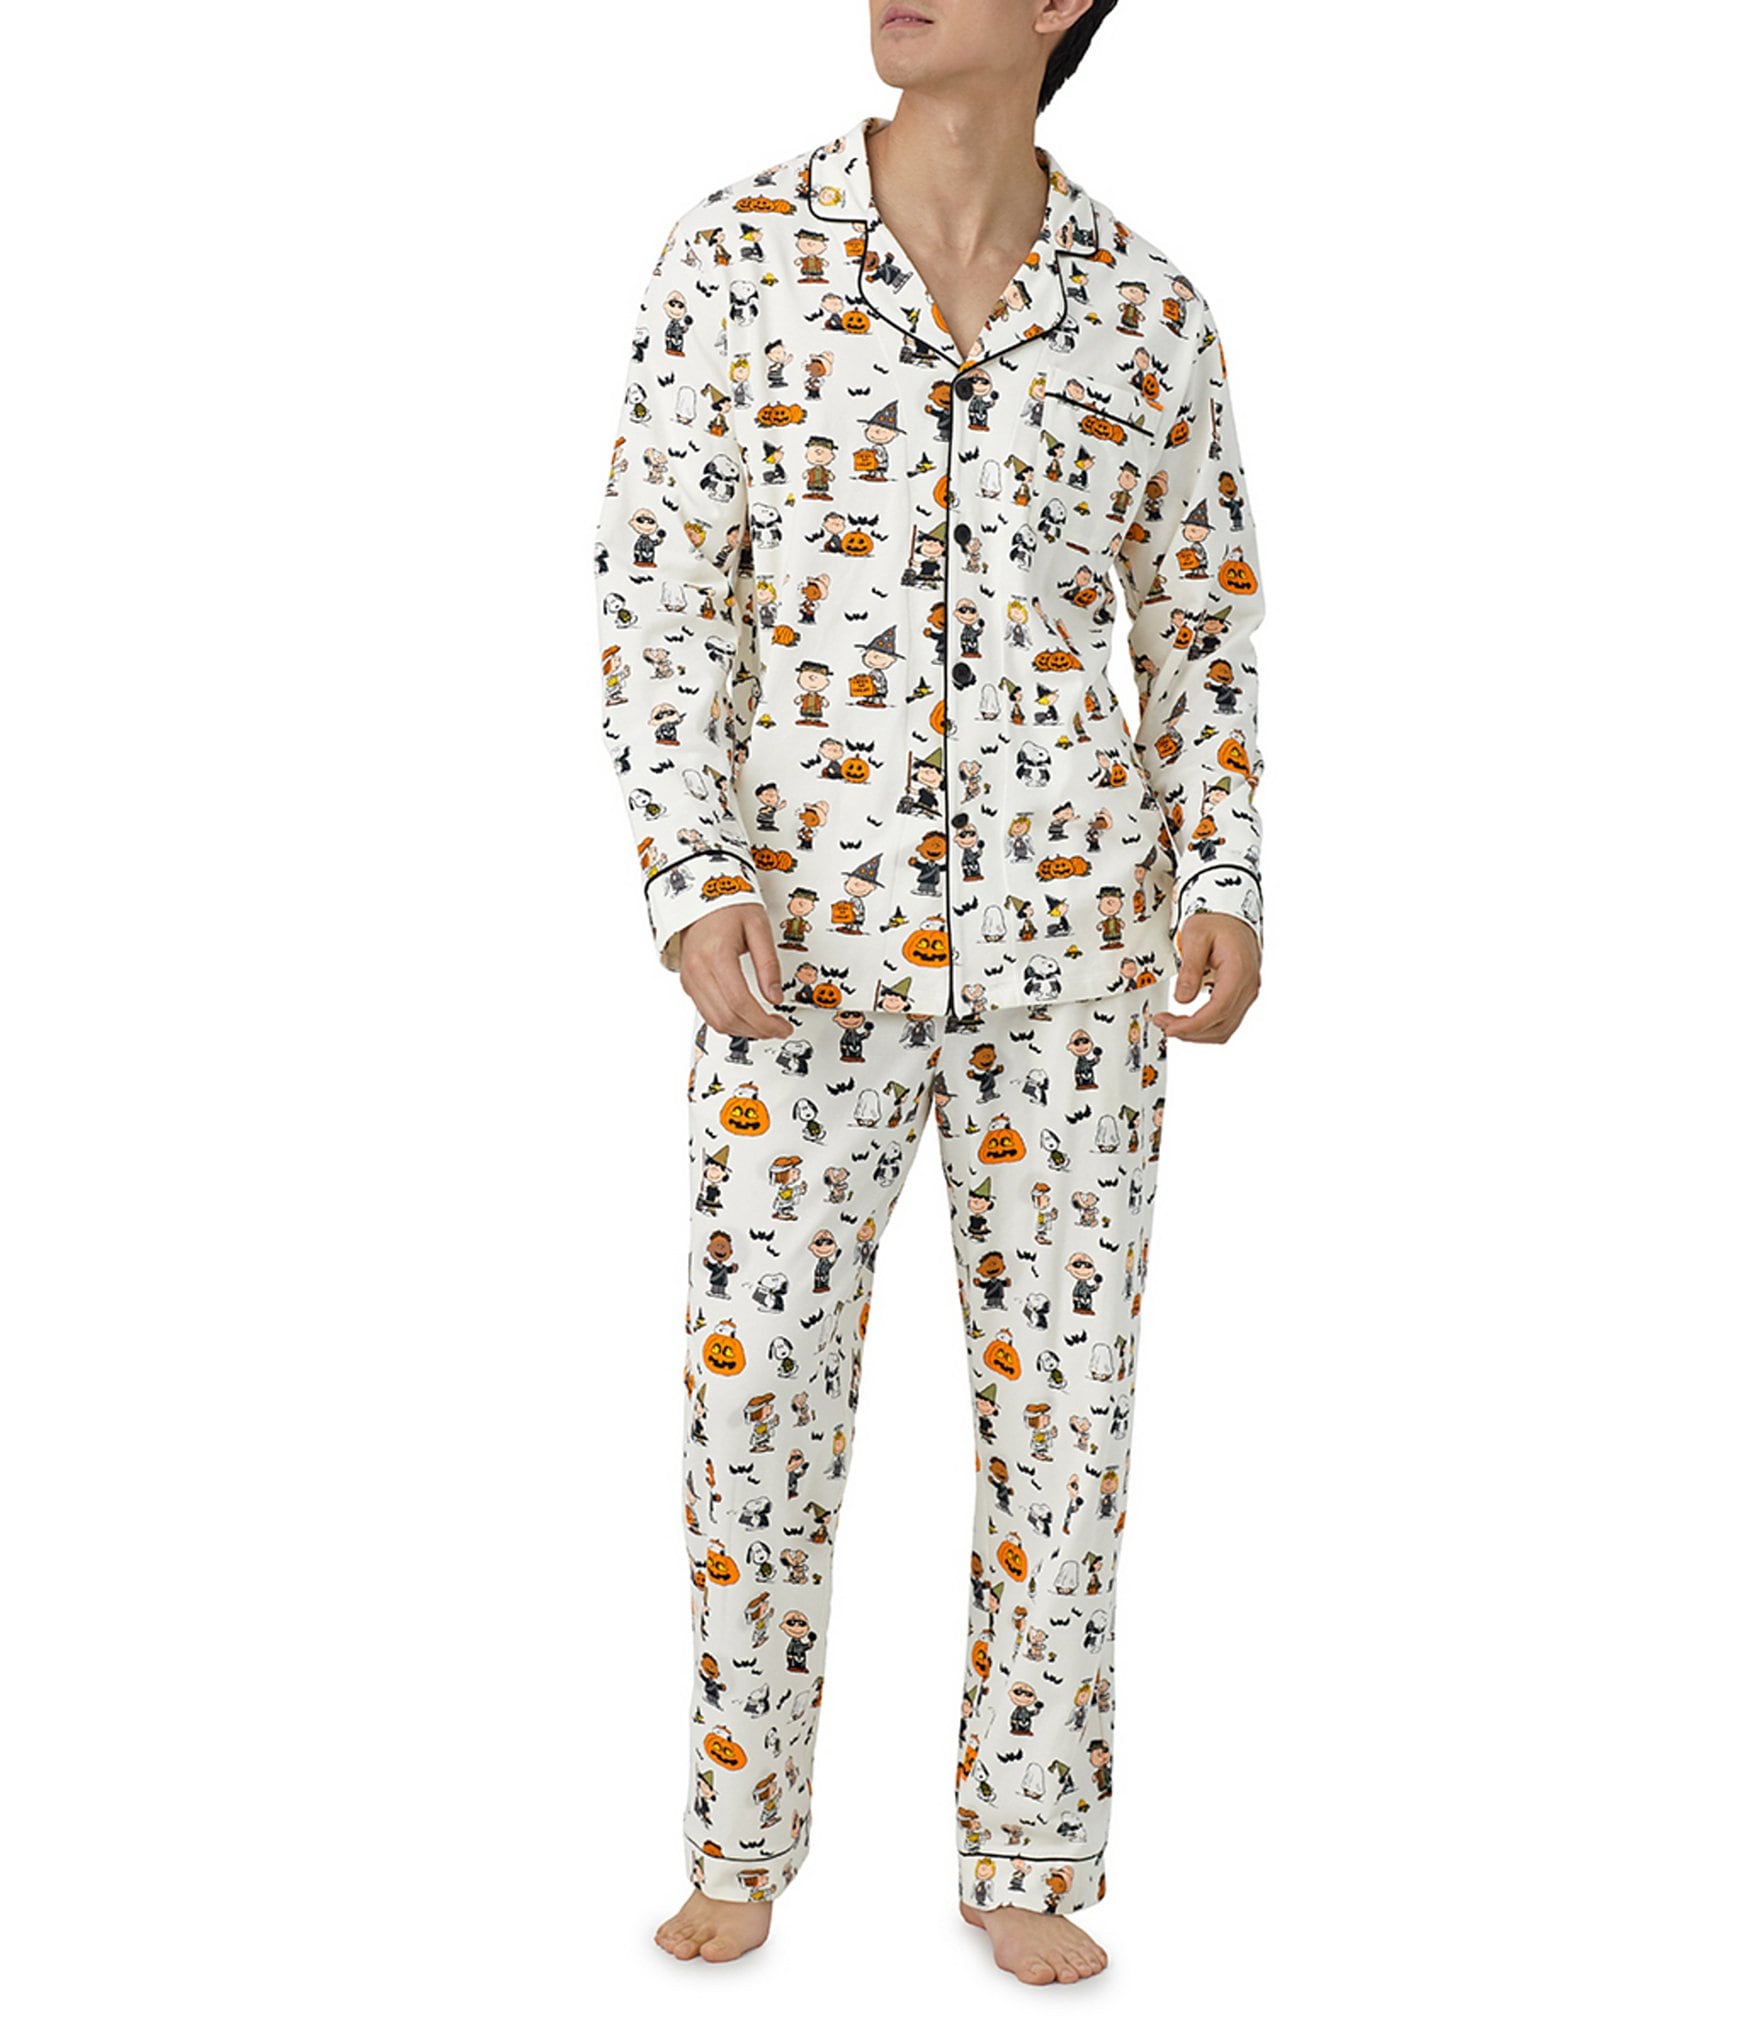 Snoopy Pajamas -  Canada